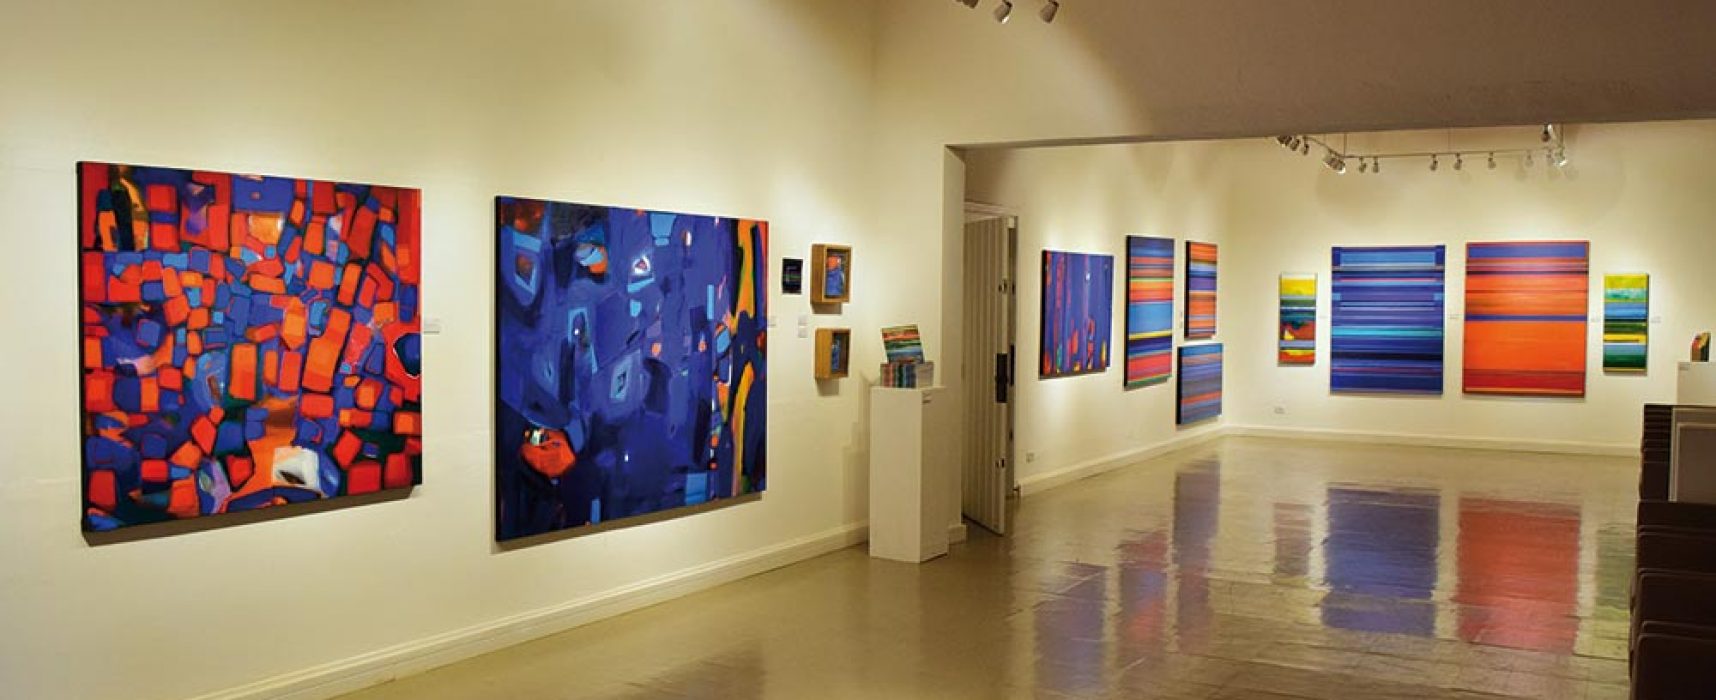 Centro Cultural da Vila recebe exposição Arte Revisitada